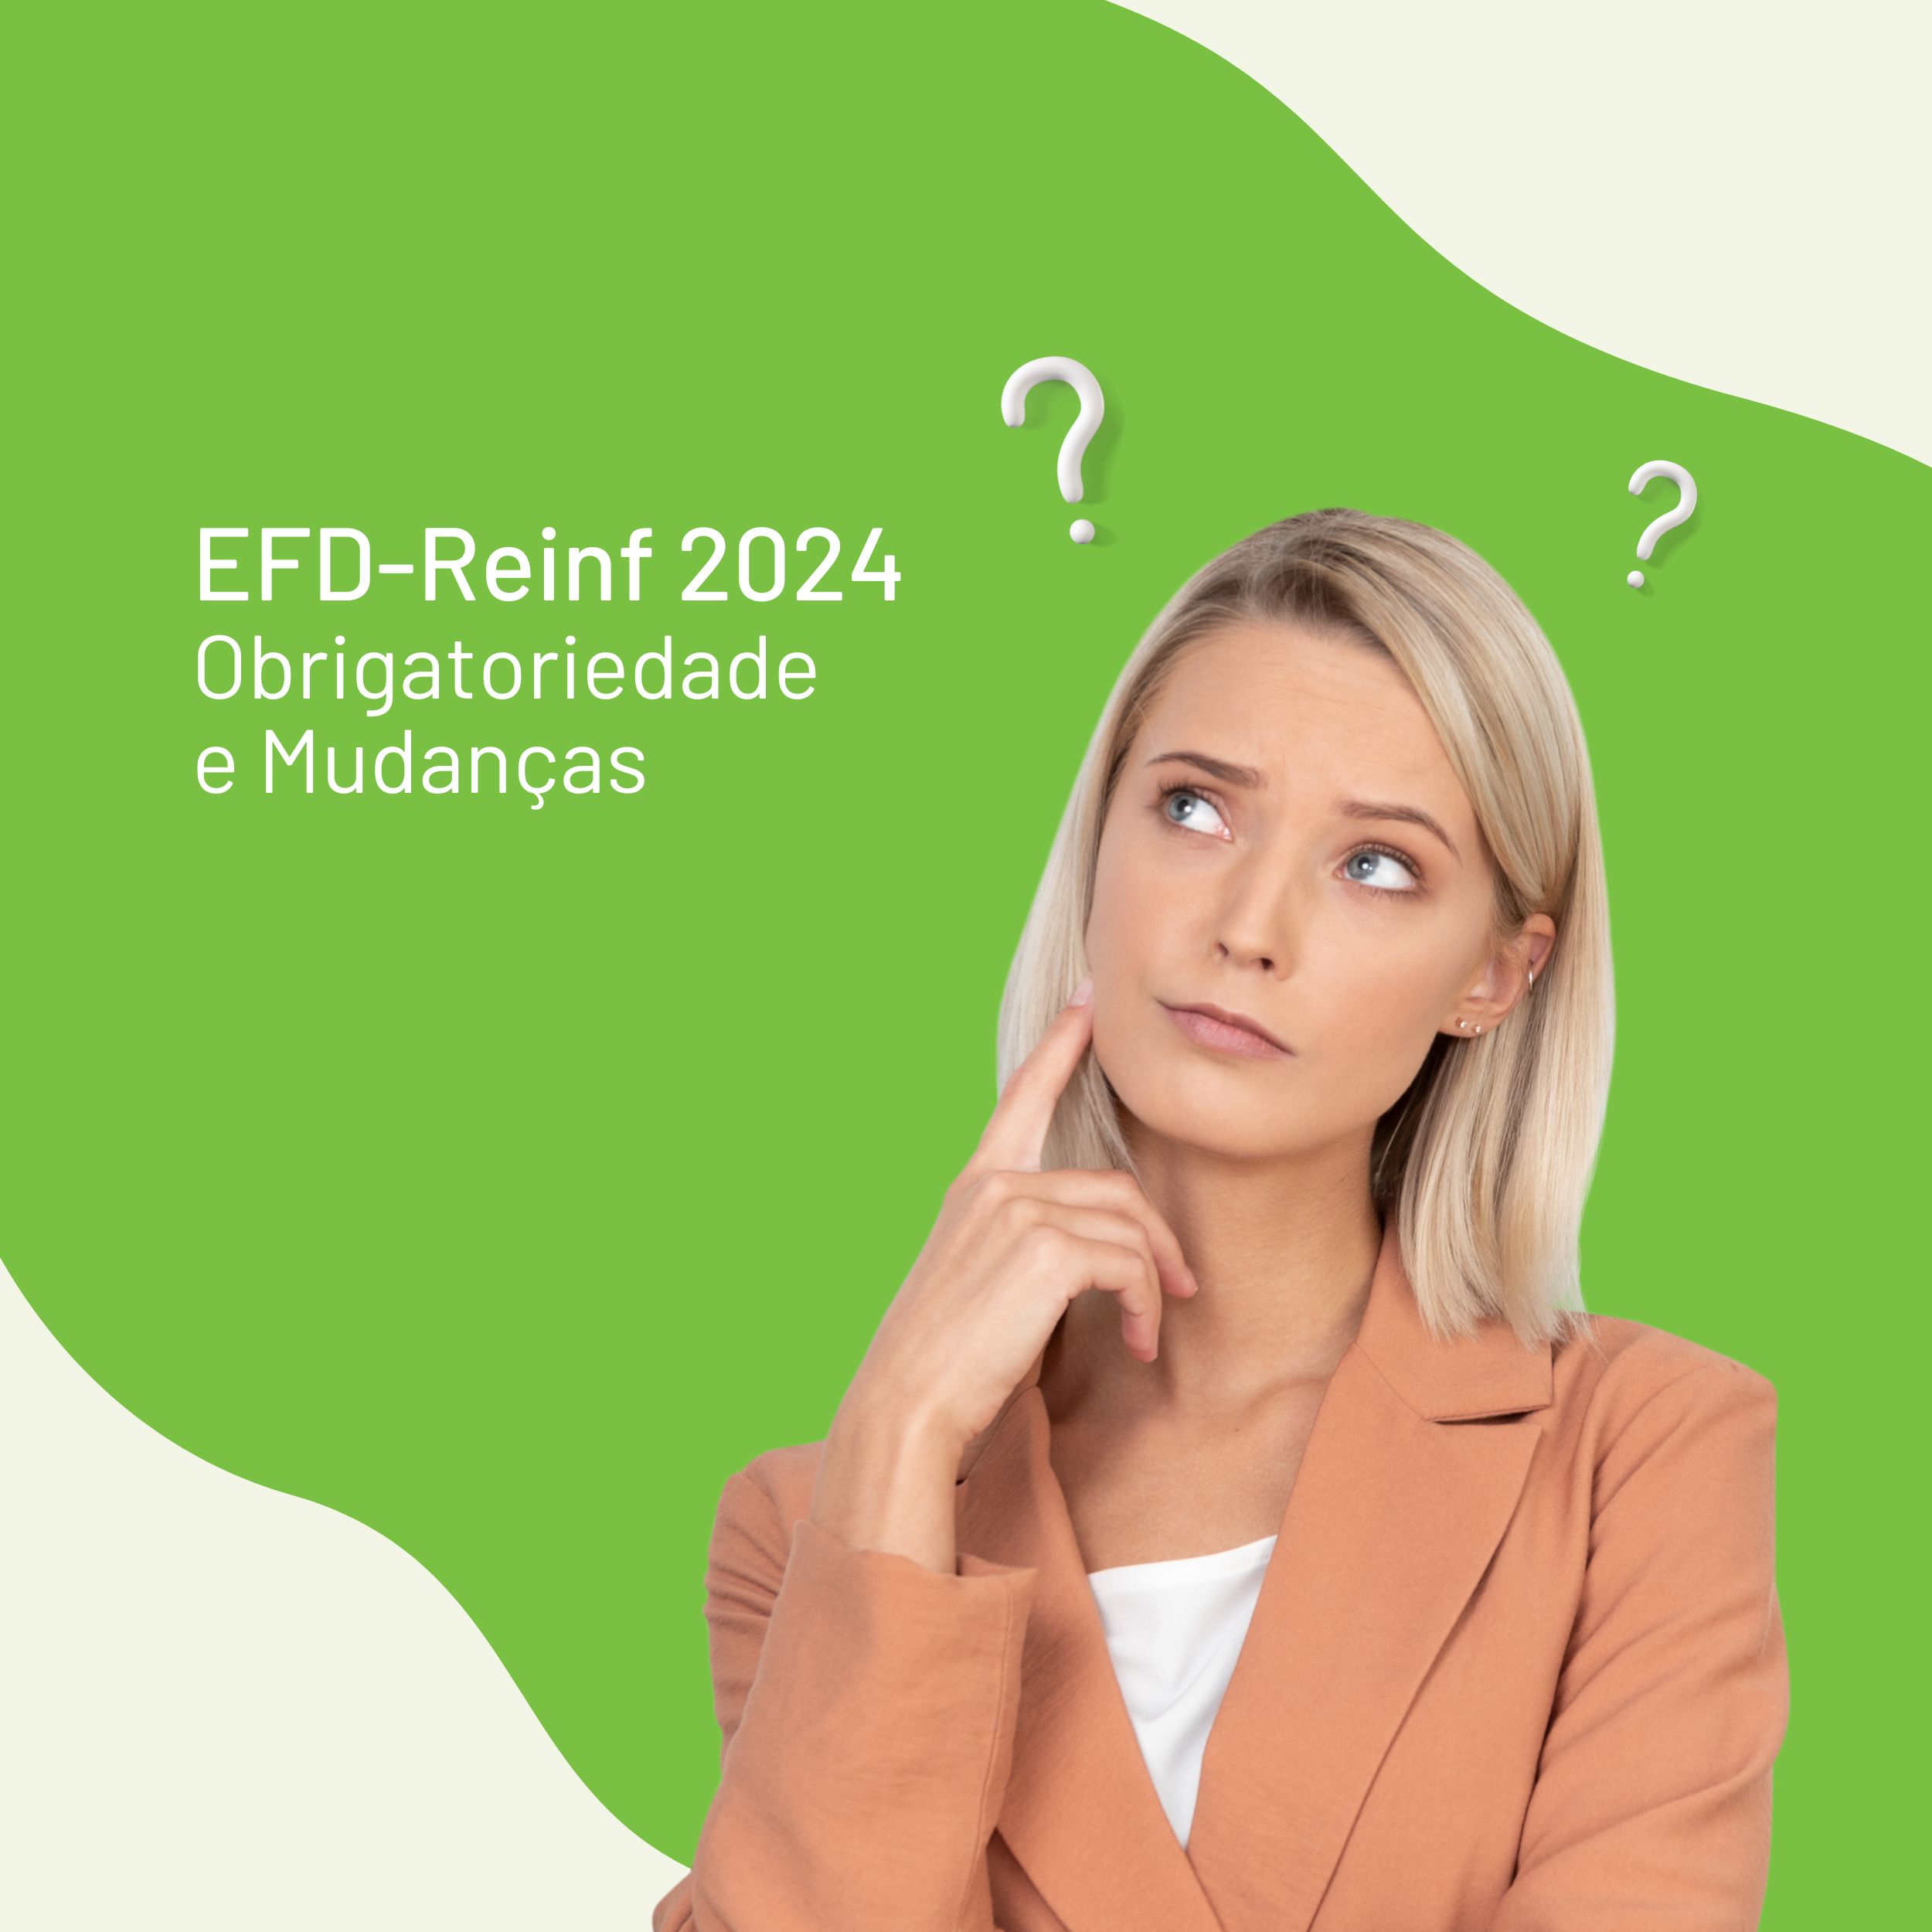 EFD-Reinf 2024: Obrigatoriedade e Mudanças